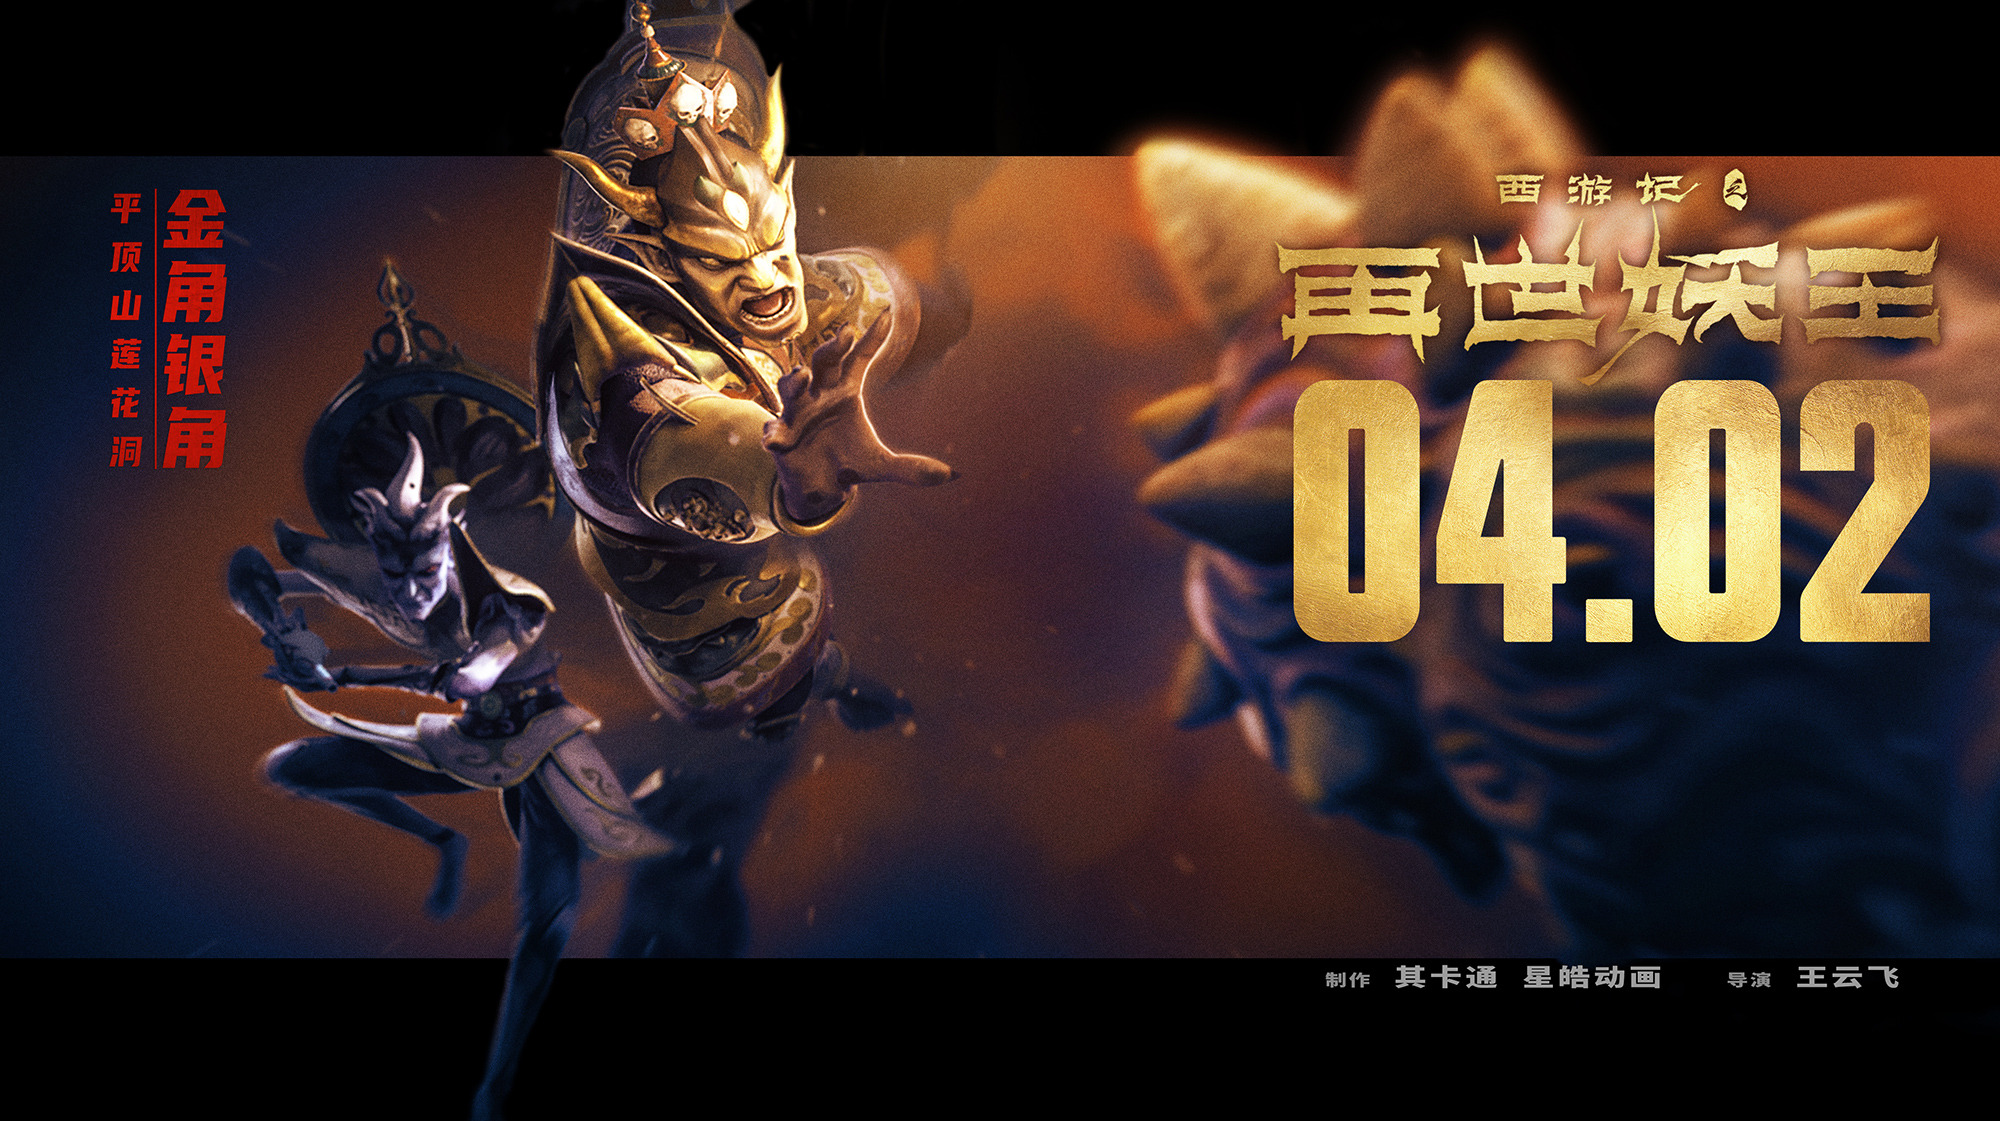 Mega Sized Movie Poster Image for Xi You Ji Zhi Zai Shi Yao Wang (#5 of 21)